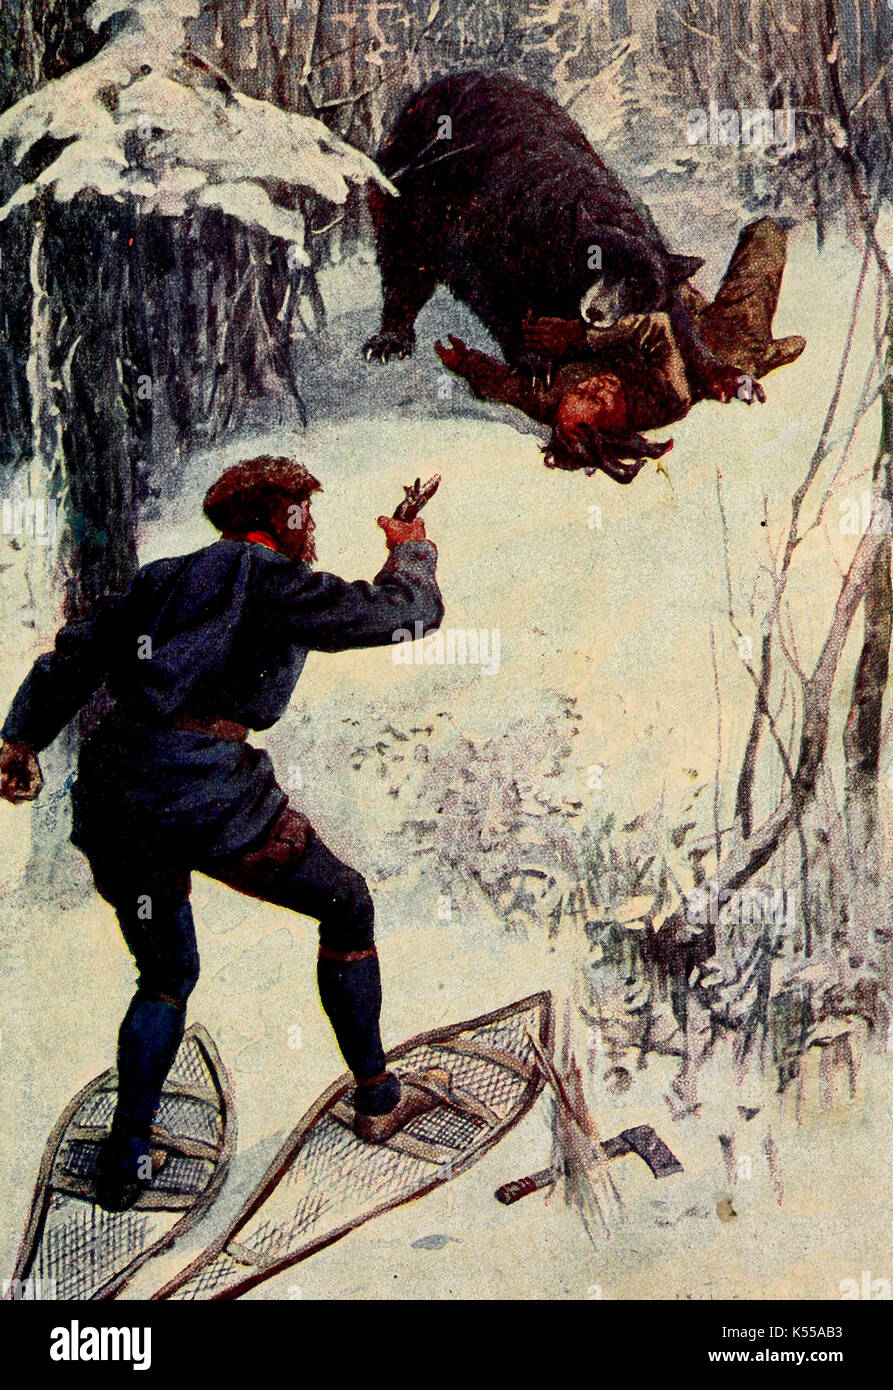 L'ours se tenait au-dessus de lui, tenant un de ses bras dans sa bouche - attaque d'un ours sur les commerçants de fourrures, circa 1700 Banque D'Images